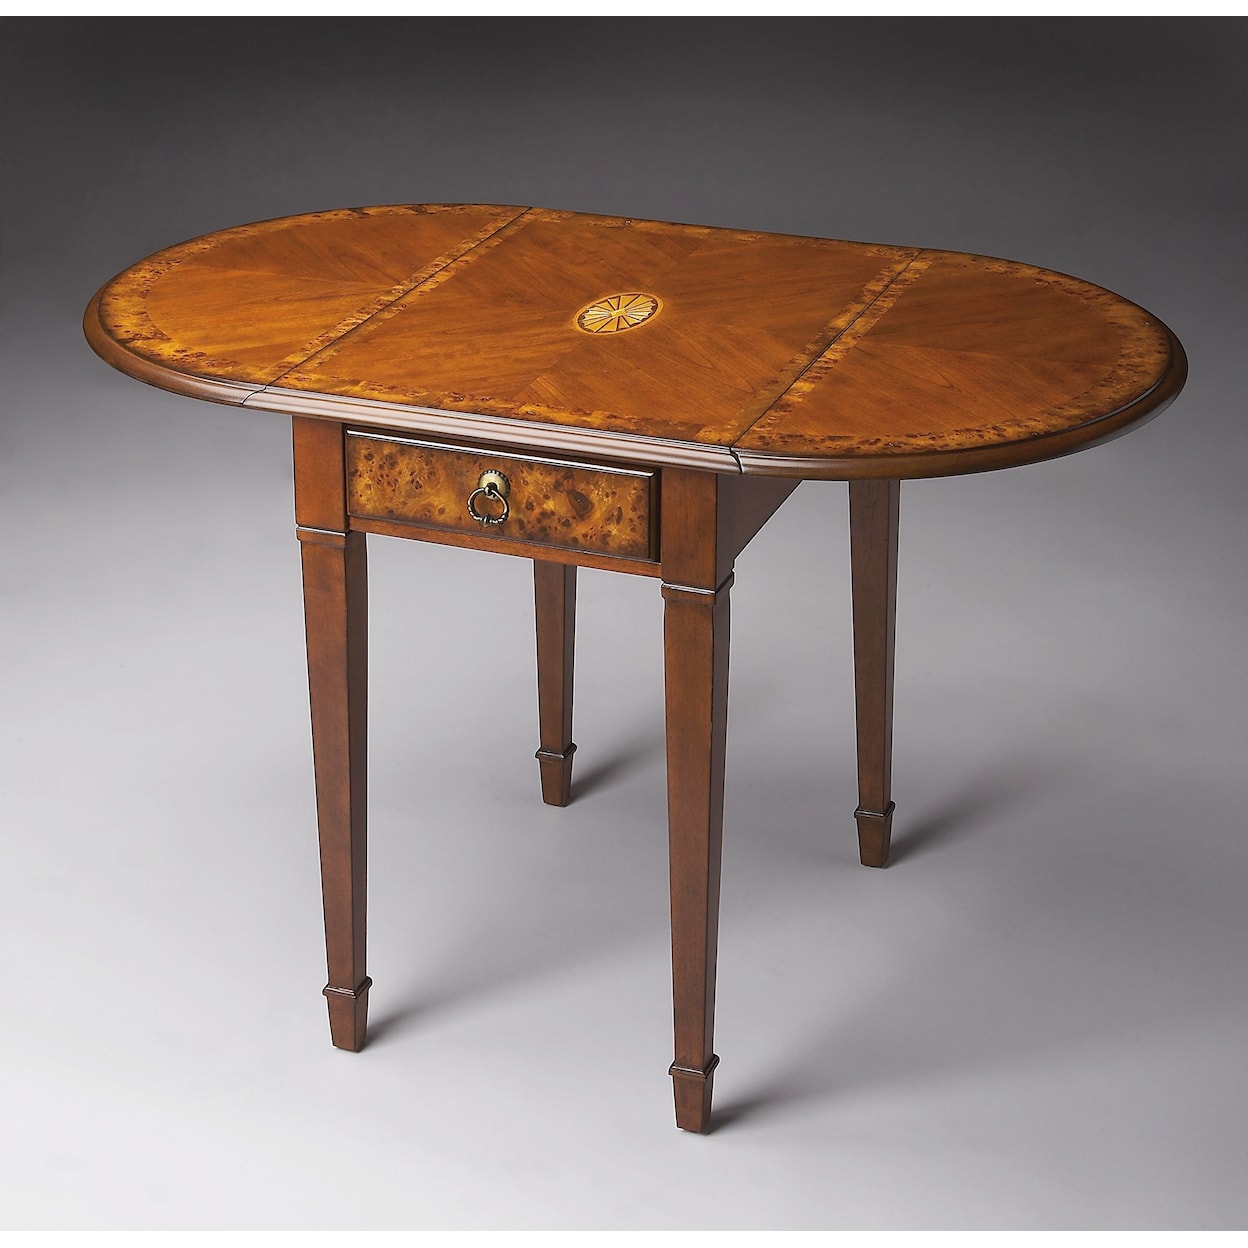 Butler Specialty Company Masterpiece  Pembroke Table